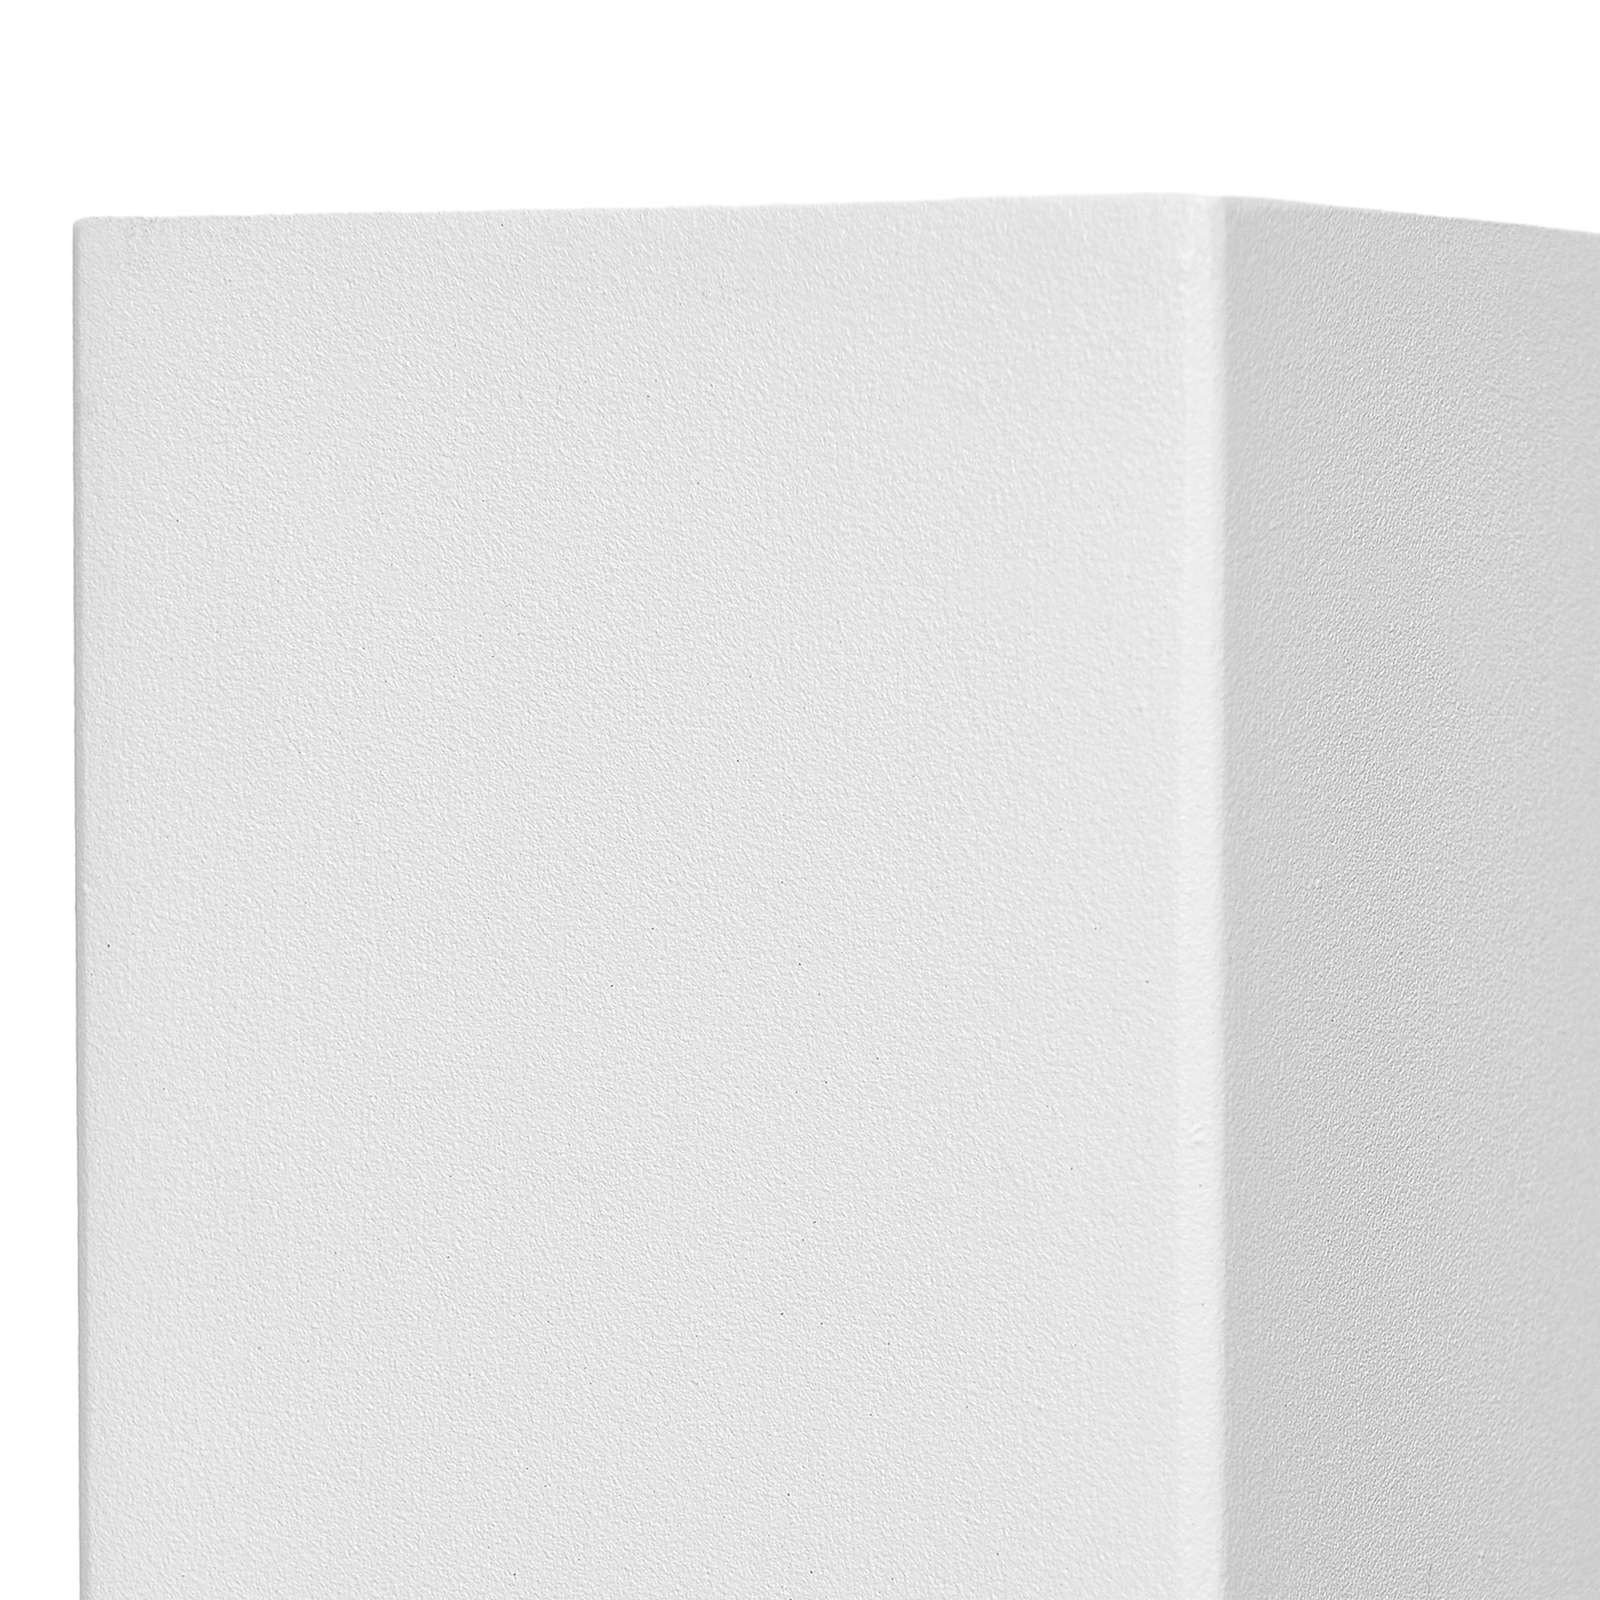 Prios buitenwandlamp Tetje, wit, hoekig, 16 cm, set van 4